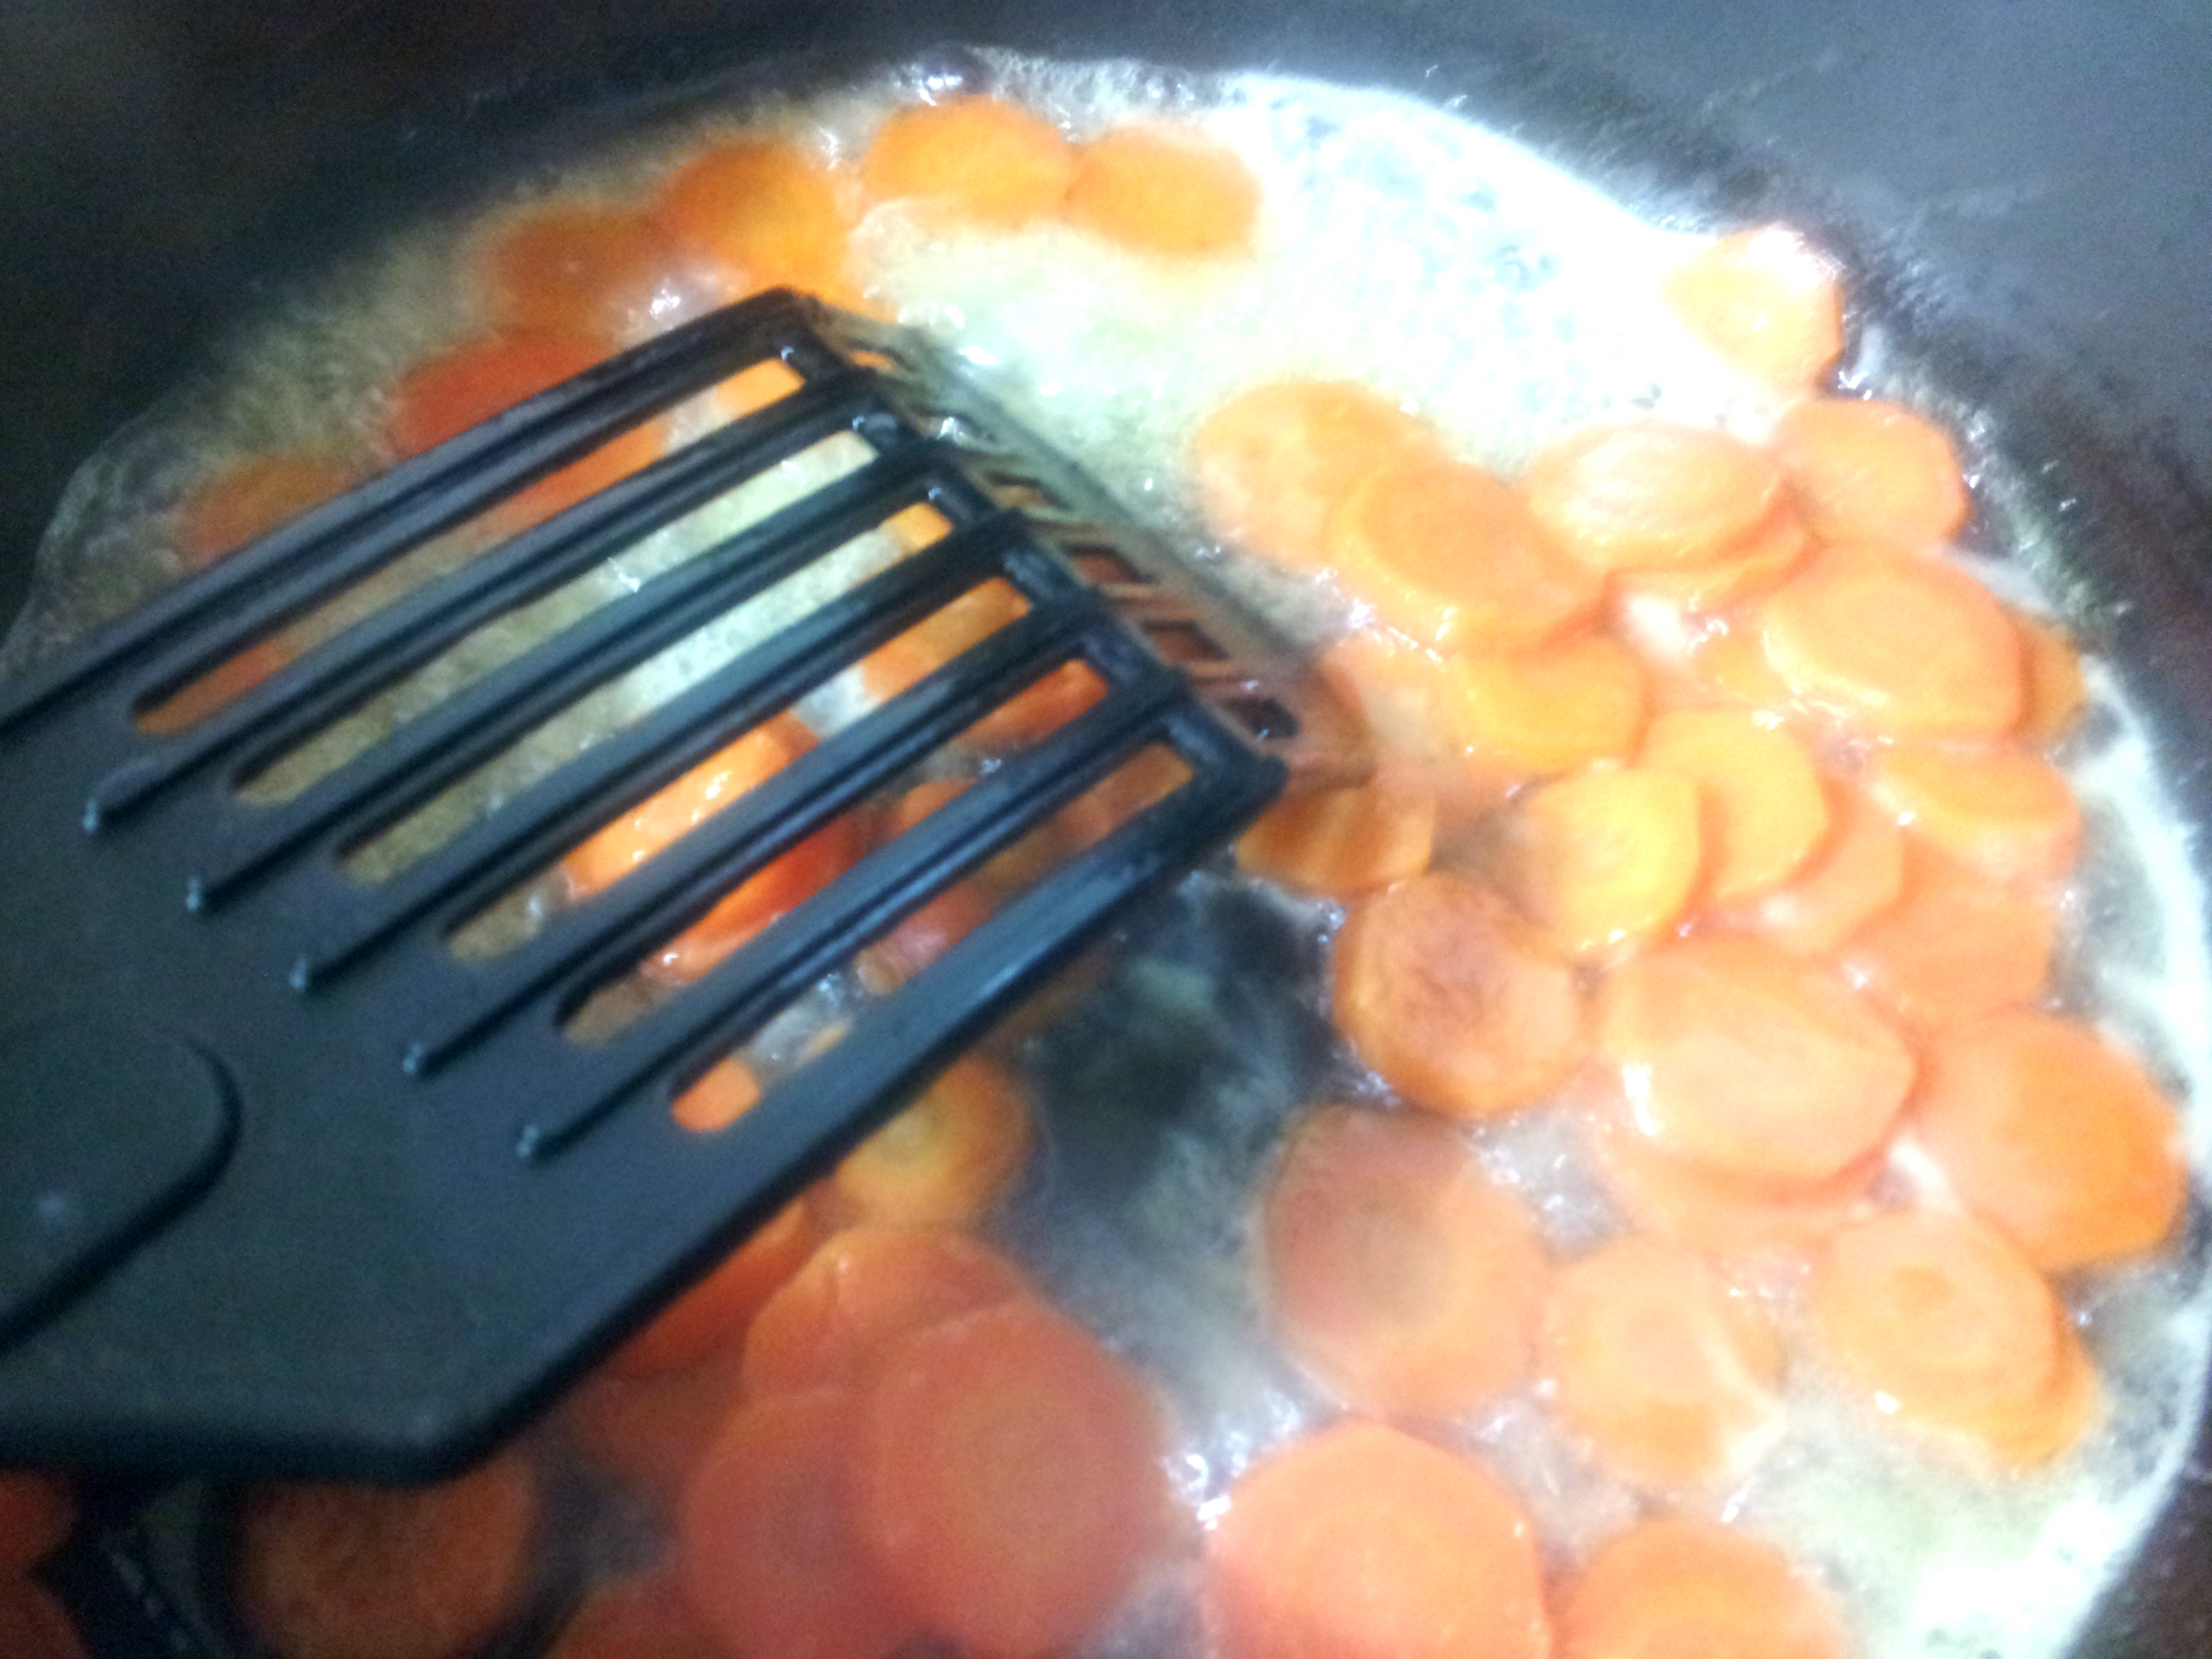 Pulpe de pui cu legume si morcov caramelizat